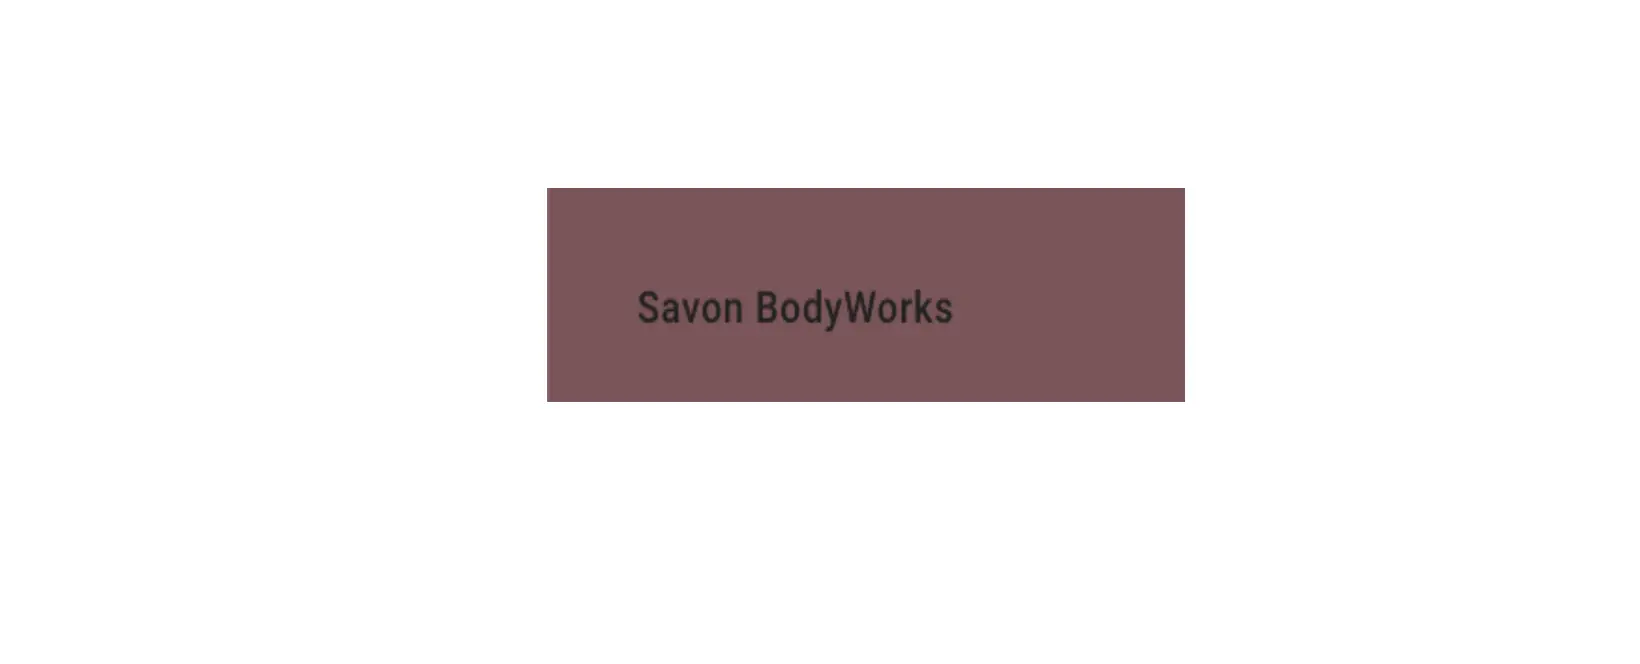 Savon BodyWorks Discount Code 2022